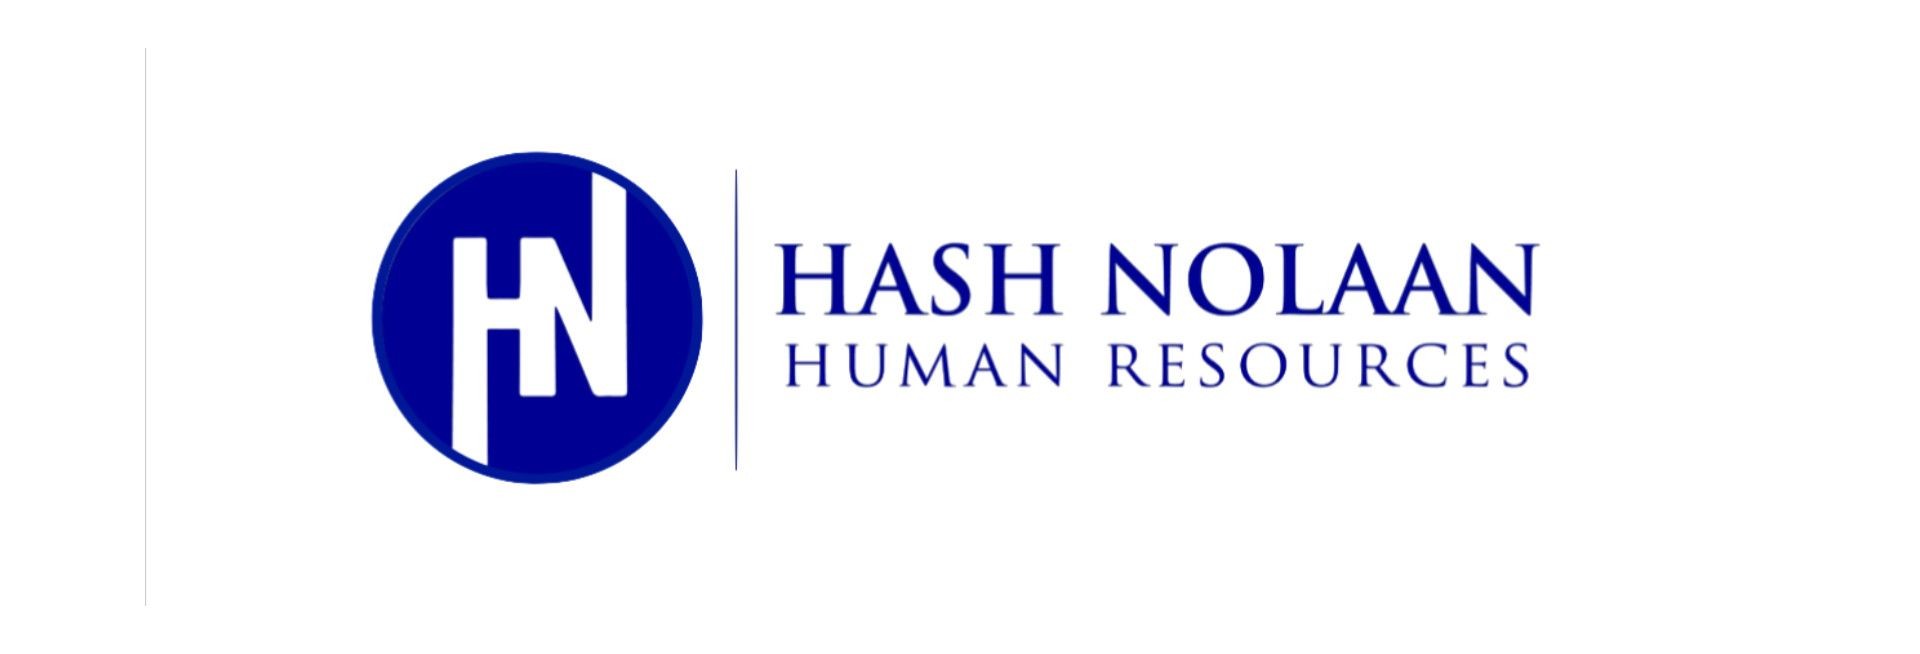 Suja Raman ,Managing Director of Hash Nolaan Human Resources Pte Ltd, Woodlands -Singapore.